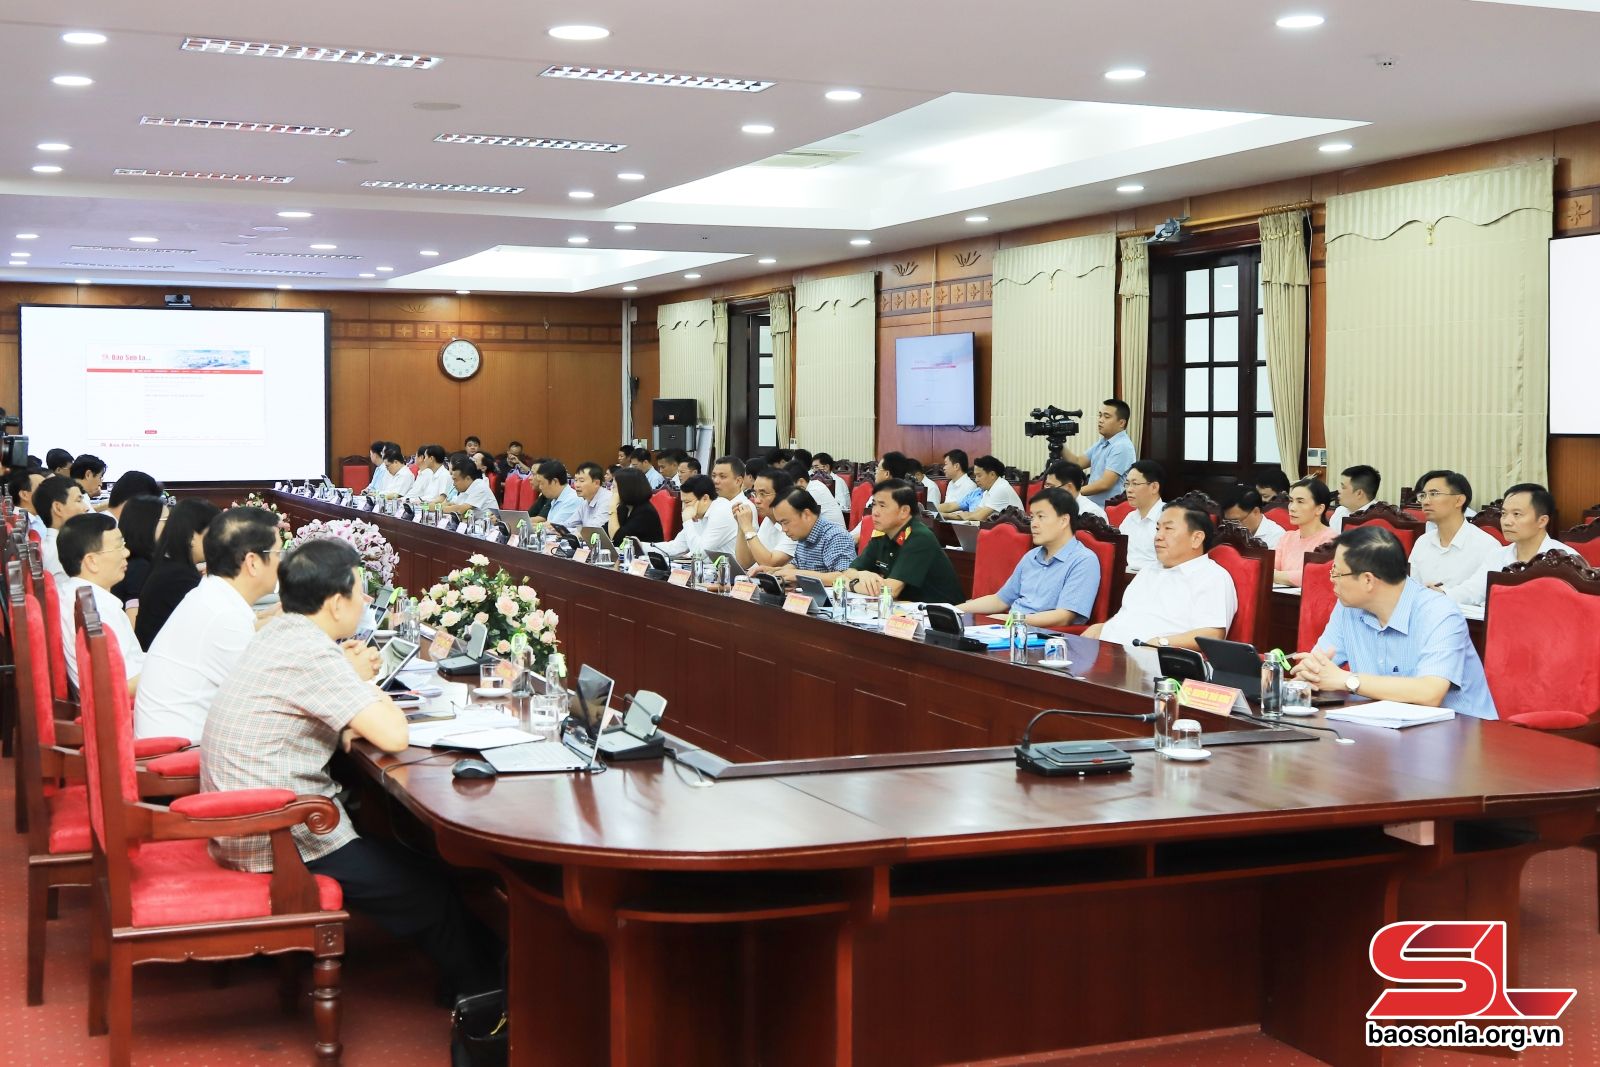 Các đại biểu xem giới thiệu giao diện mới và các chuyên trang của Báo Sơn La điện tử.